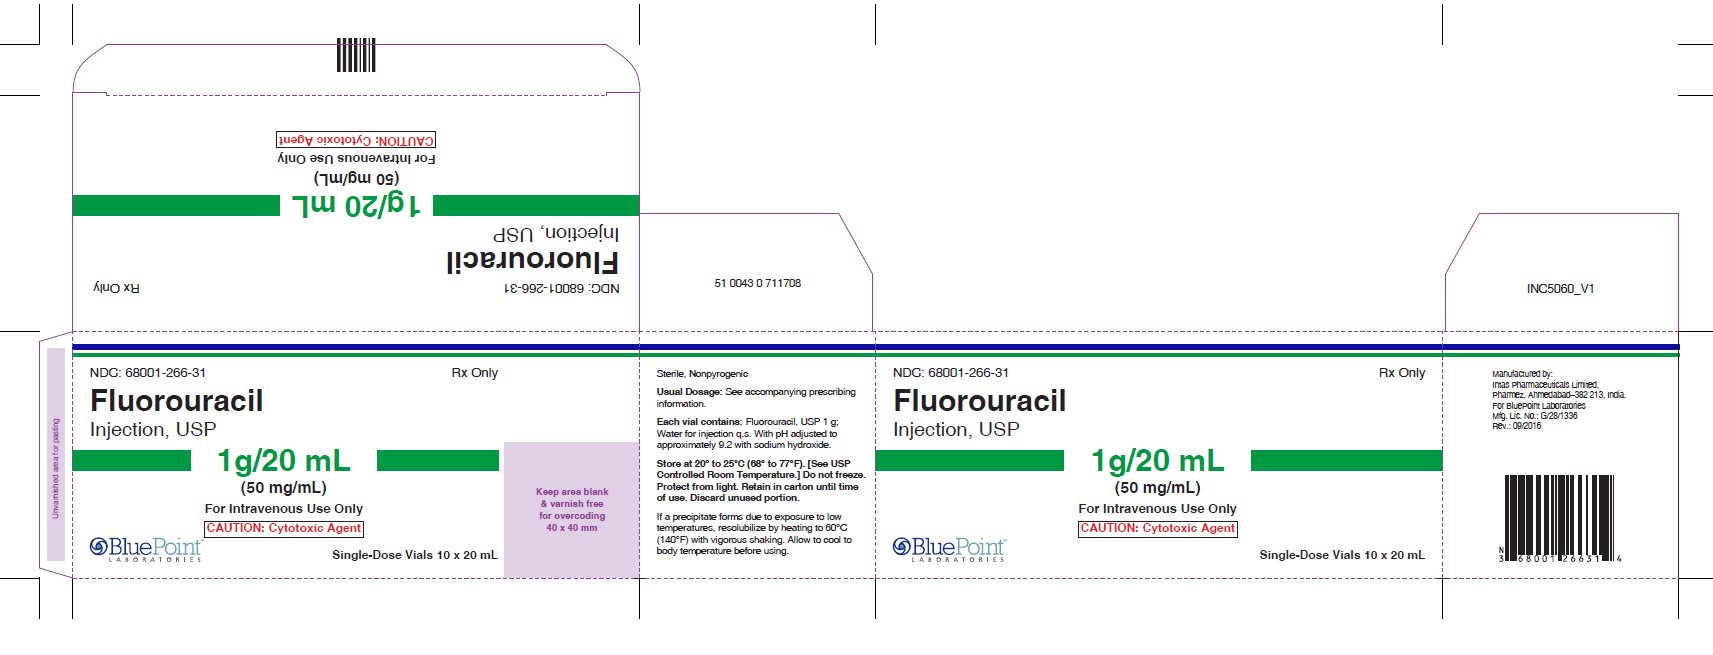 Fluorouracil 1g 20ml carton Rev09-16 - Single-Dose